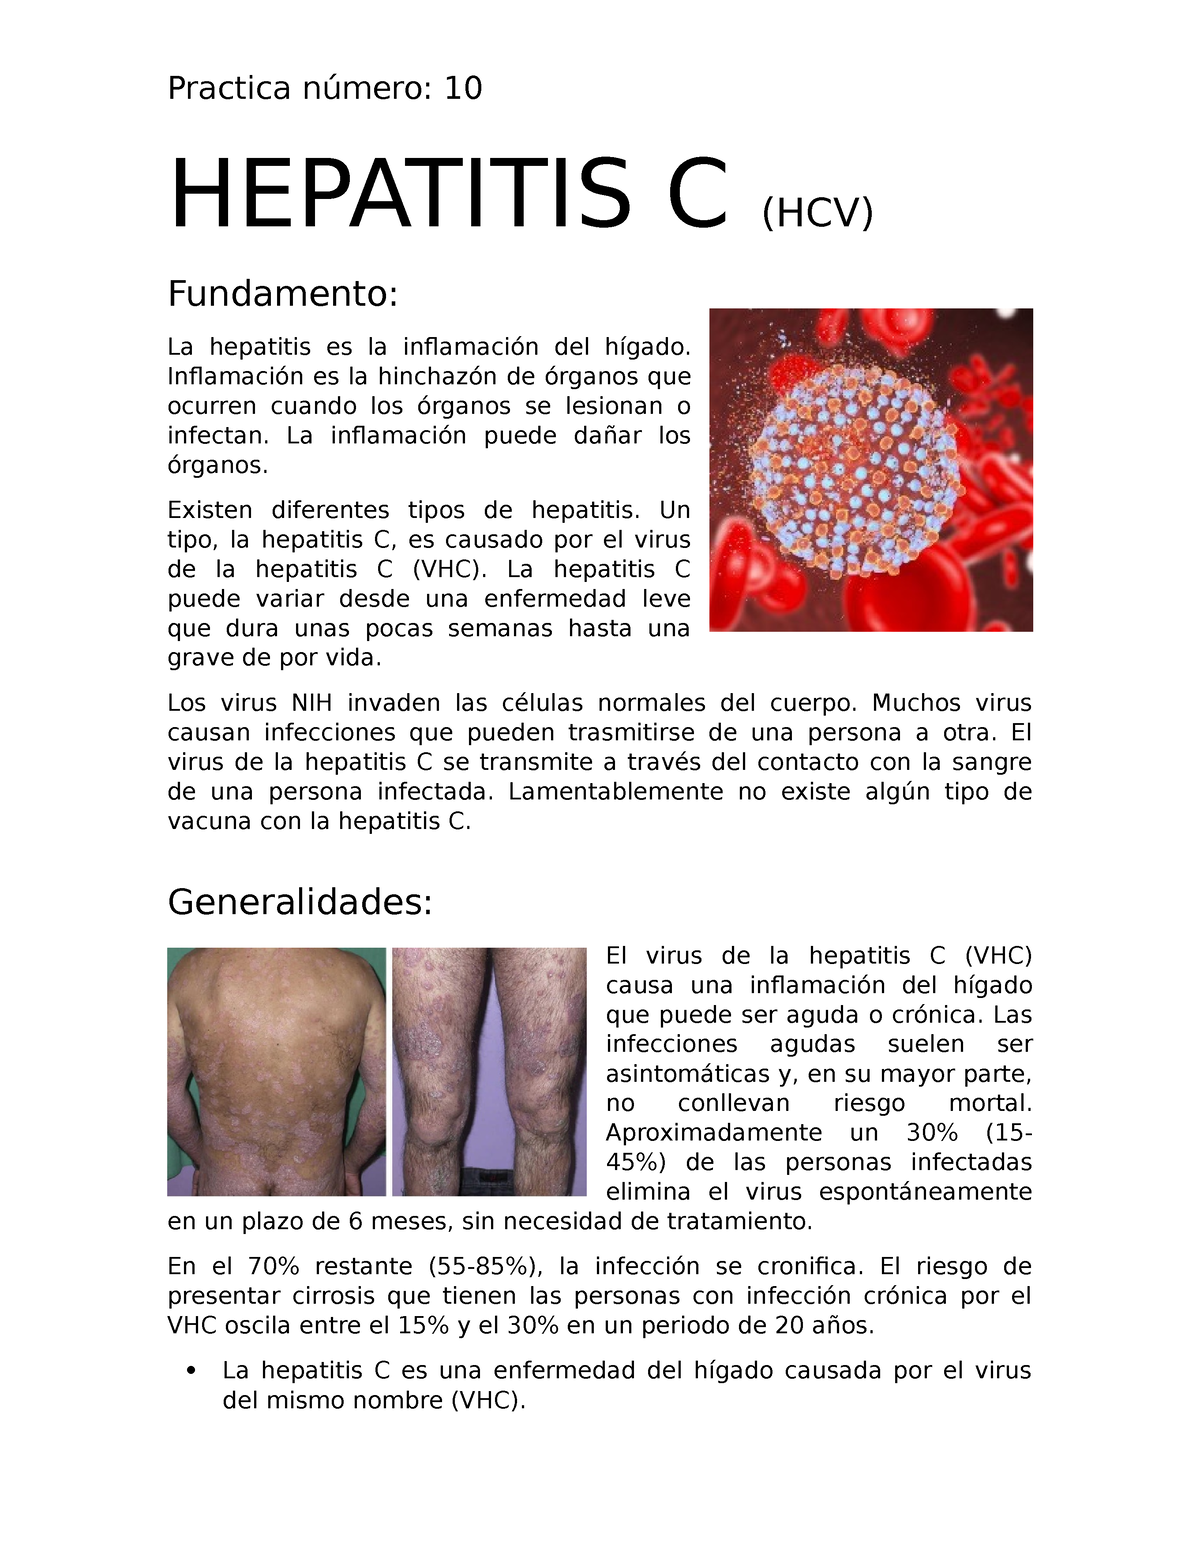 Hepatitis C HEPATITIS C HCV Fundamento La hepatitis es la inflamación del hígado